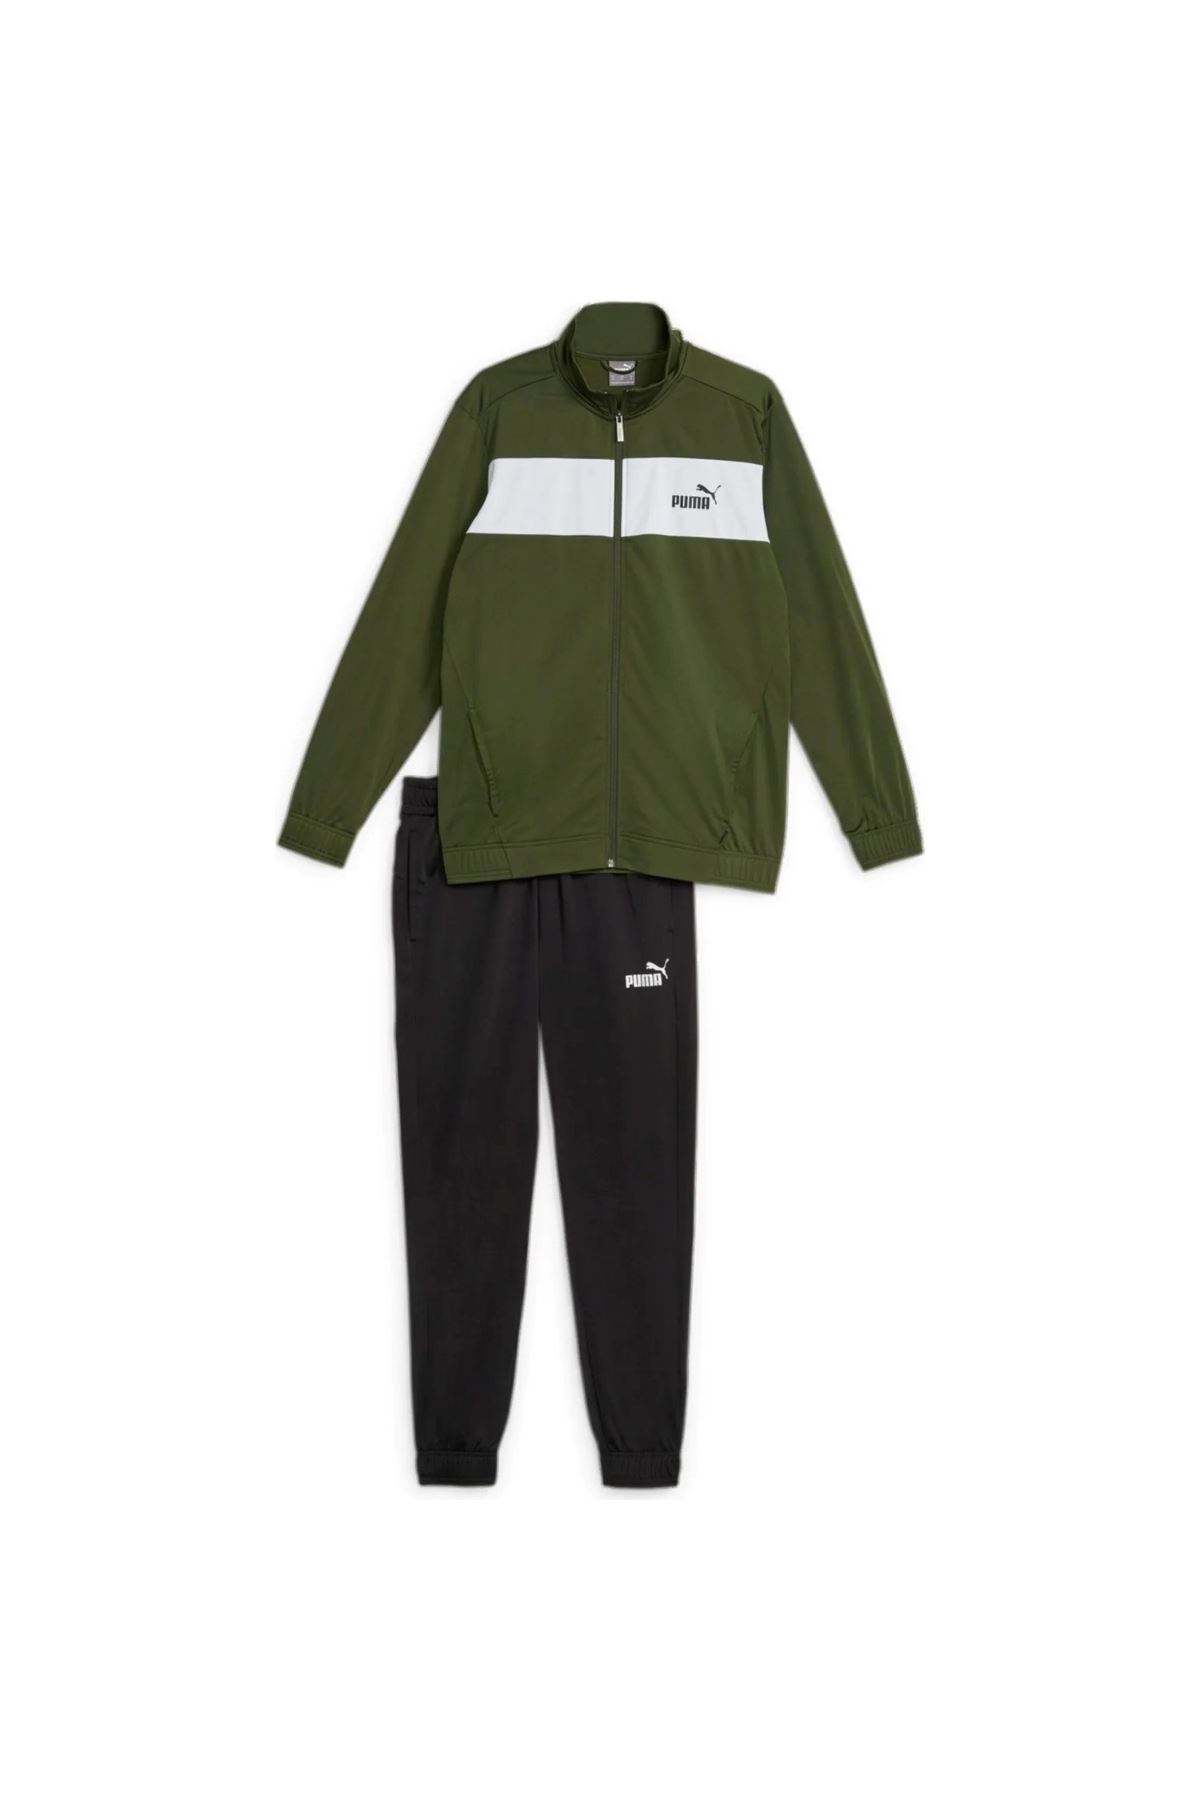 Puma Poly Suit Cl Erkek Yeşil Eşofman Takımı - 677427-31